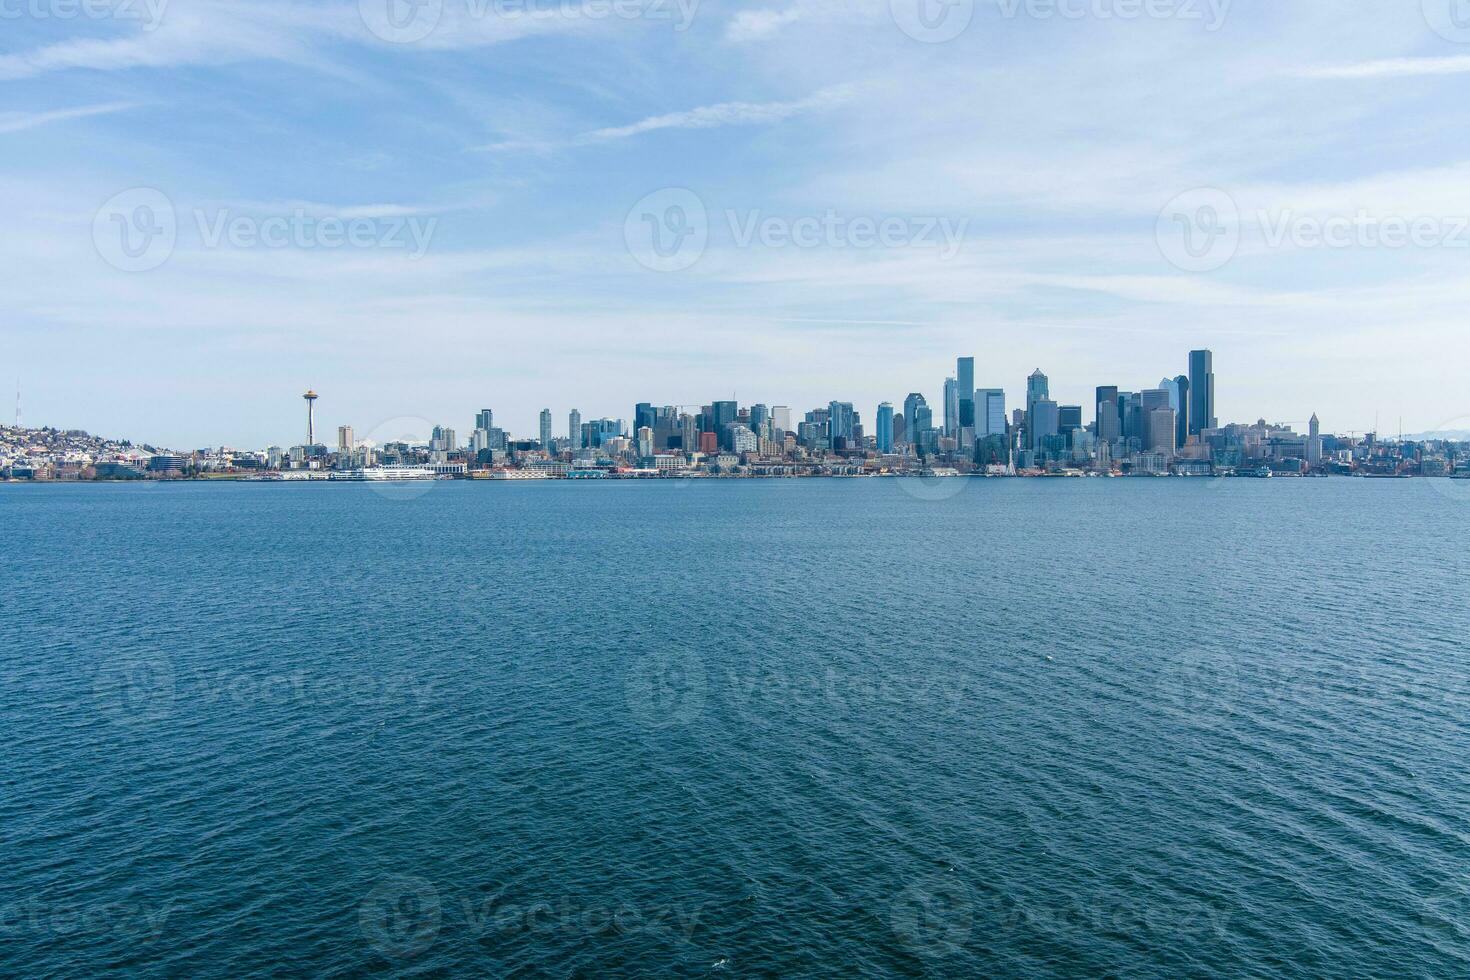 Seattle, de skyline van Washington foto